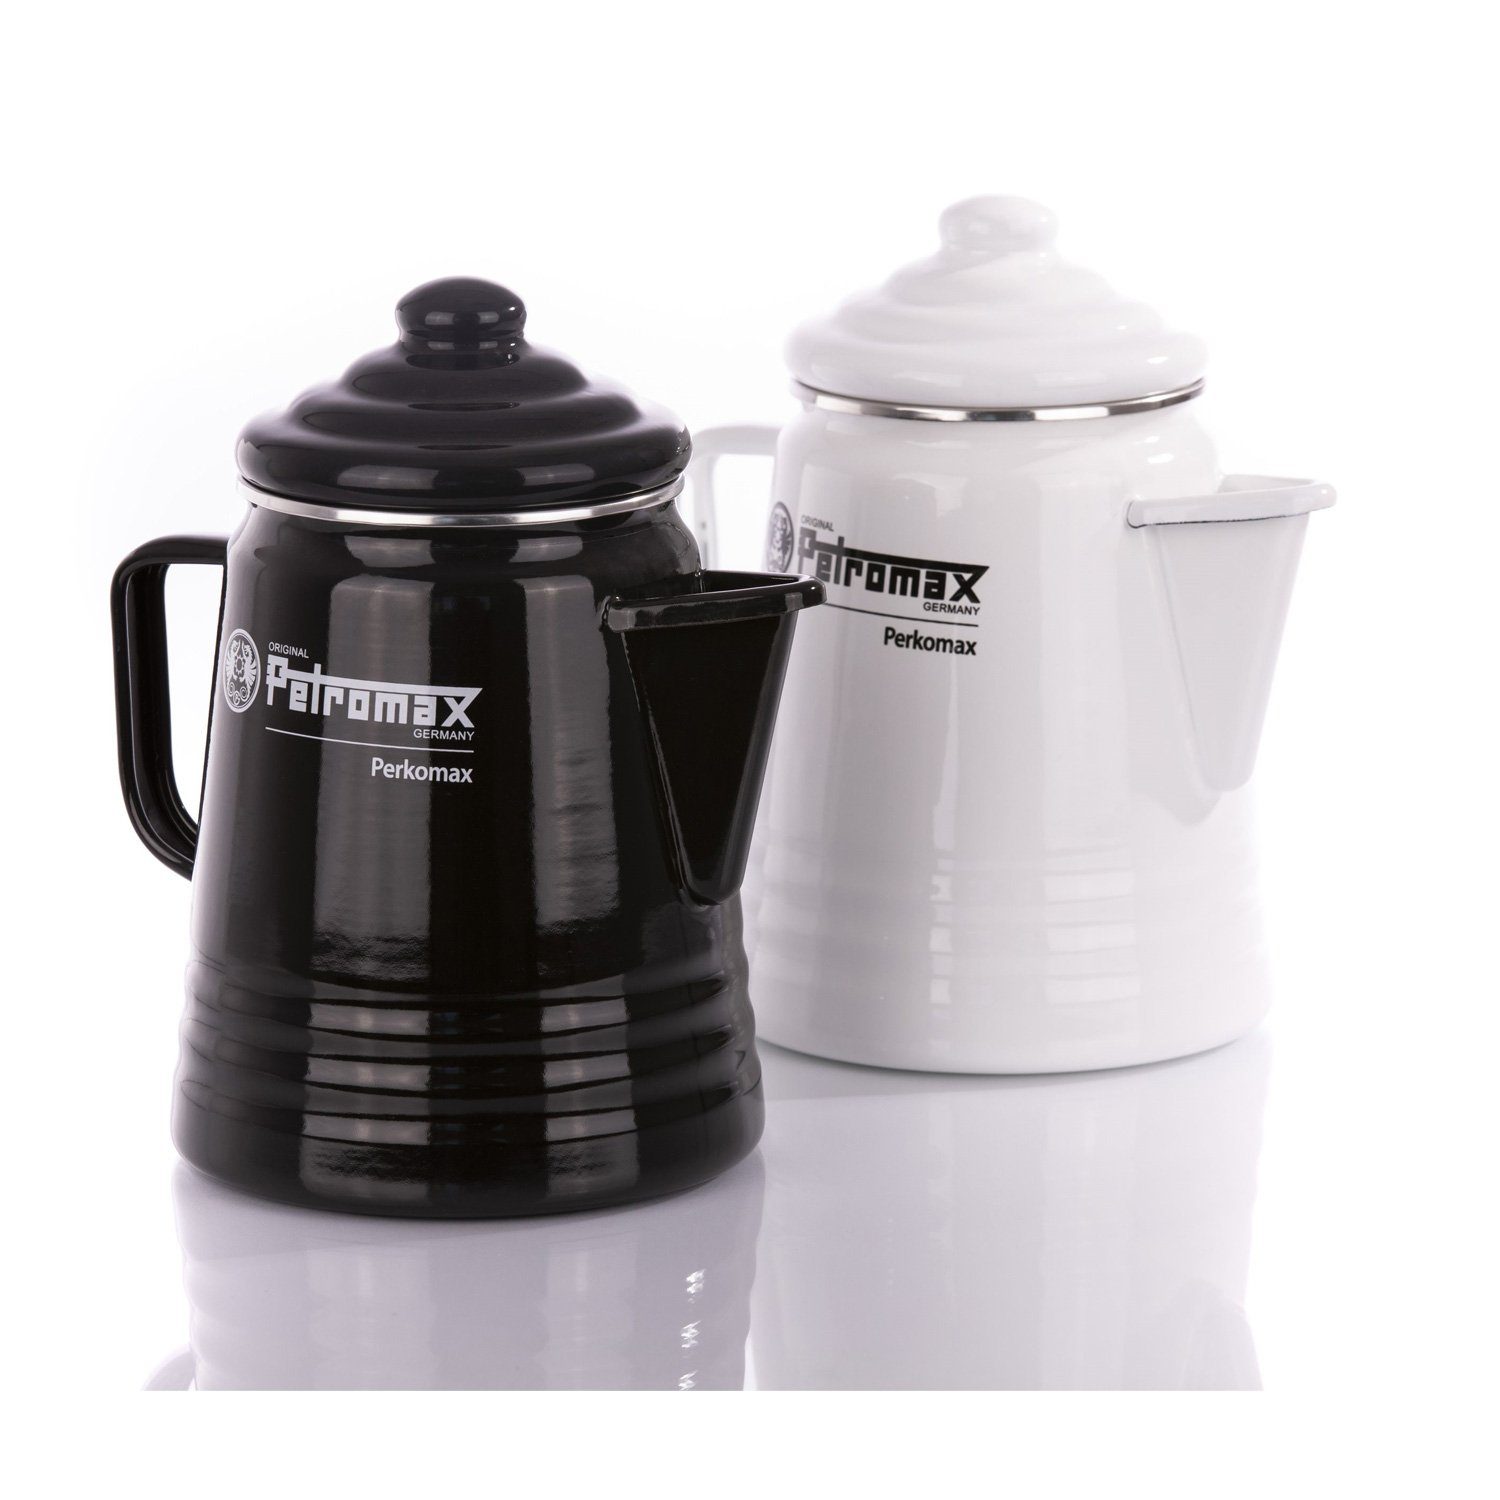 Petromax Perkolator Petromax weiß, 1.3l Kaffee Kanne 1,3l per-9-s Tee Kaffeekanne Kocher Perkolator